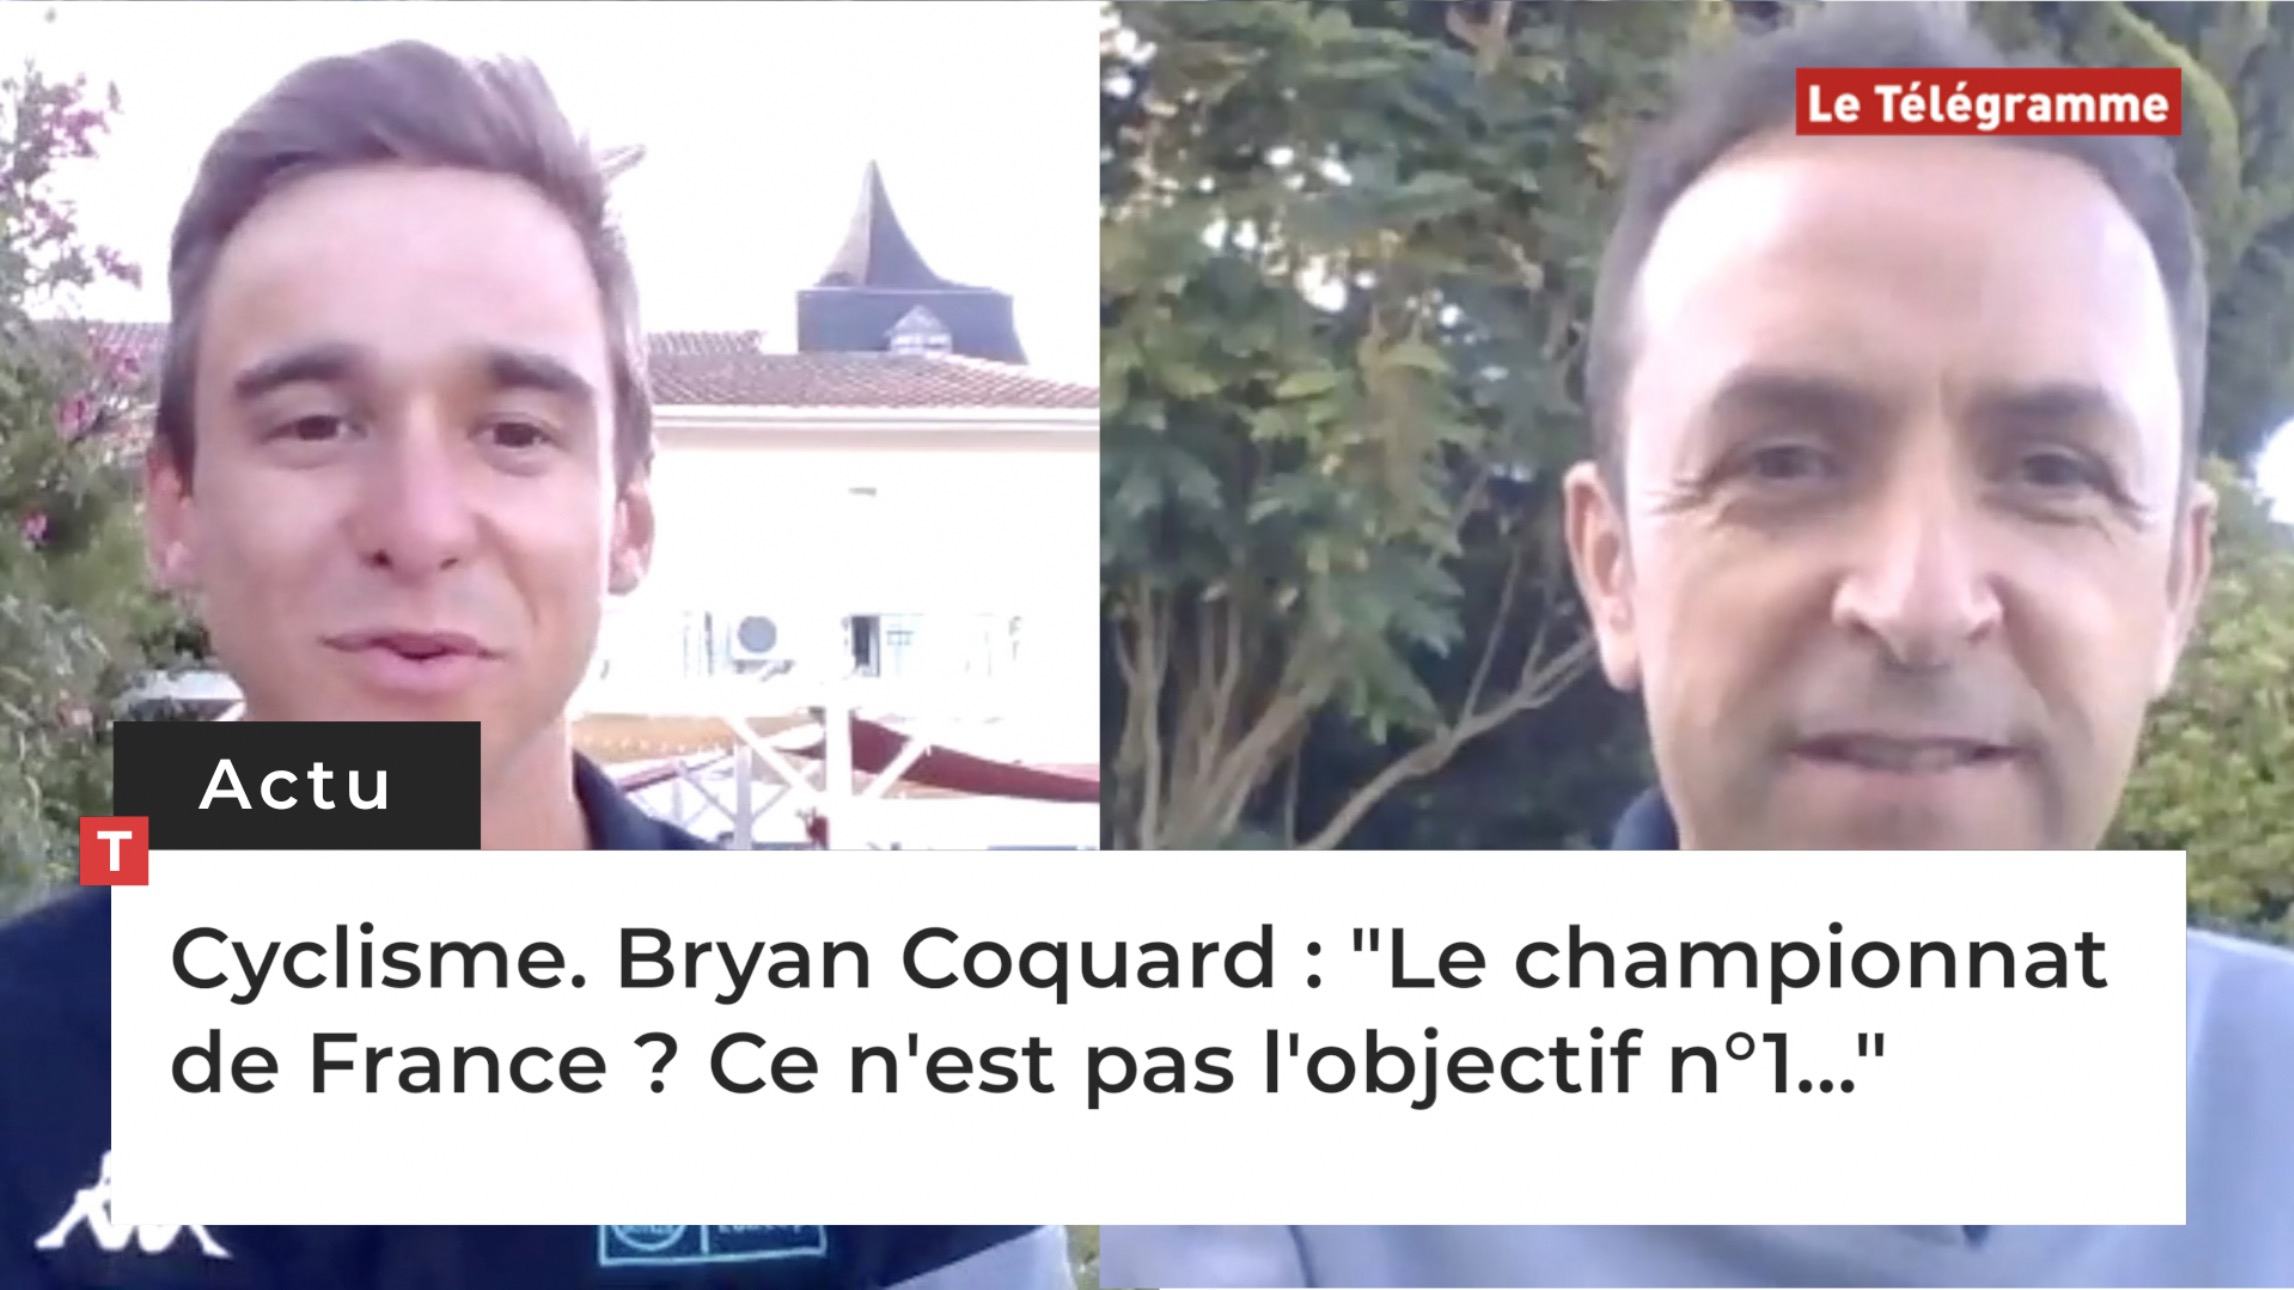 Cyclisme. Bryan Coquard : "Le championnat de France ? Ce n'est pas l'objectif n°1..." (Le Télégramme)